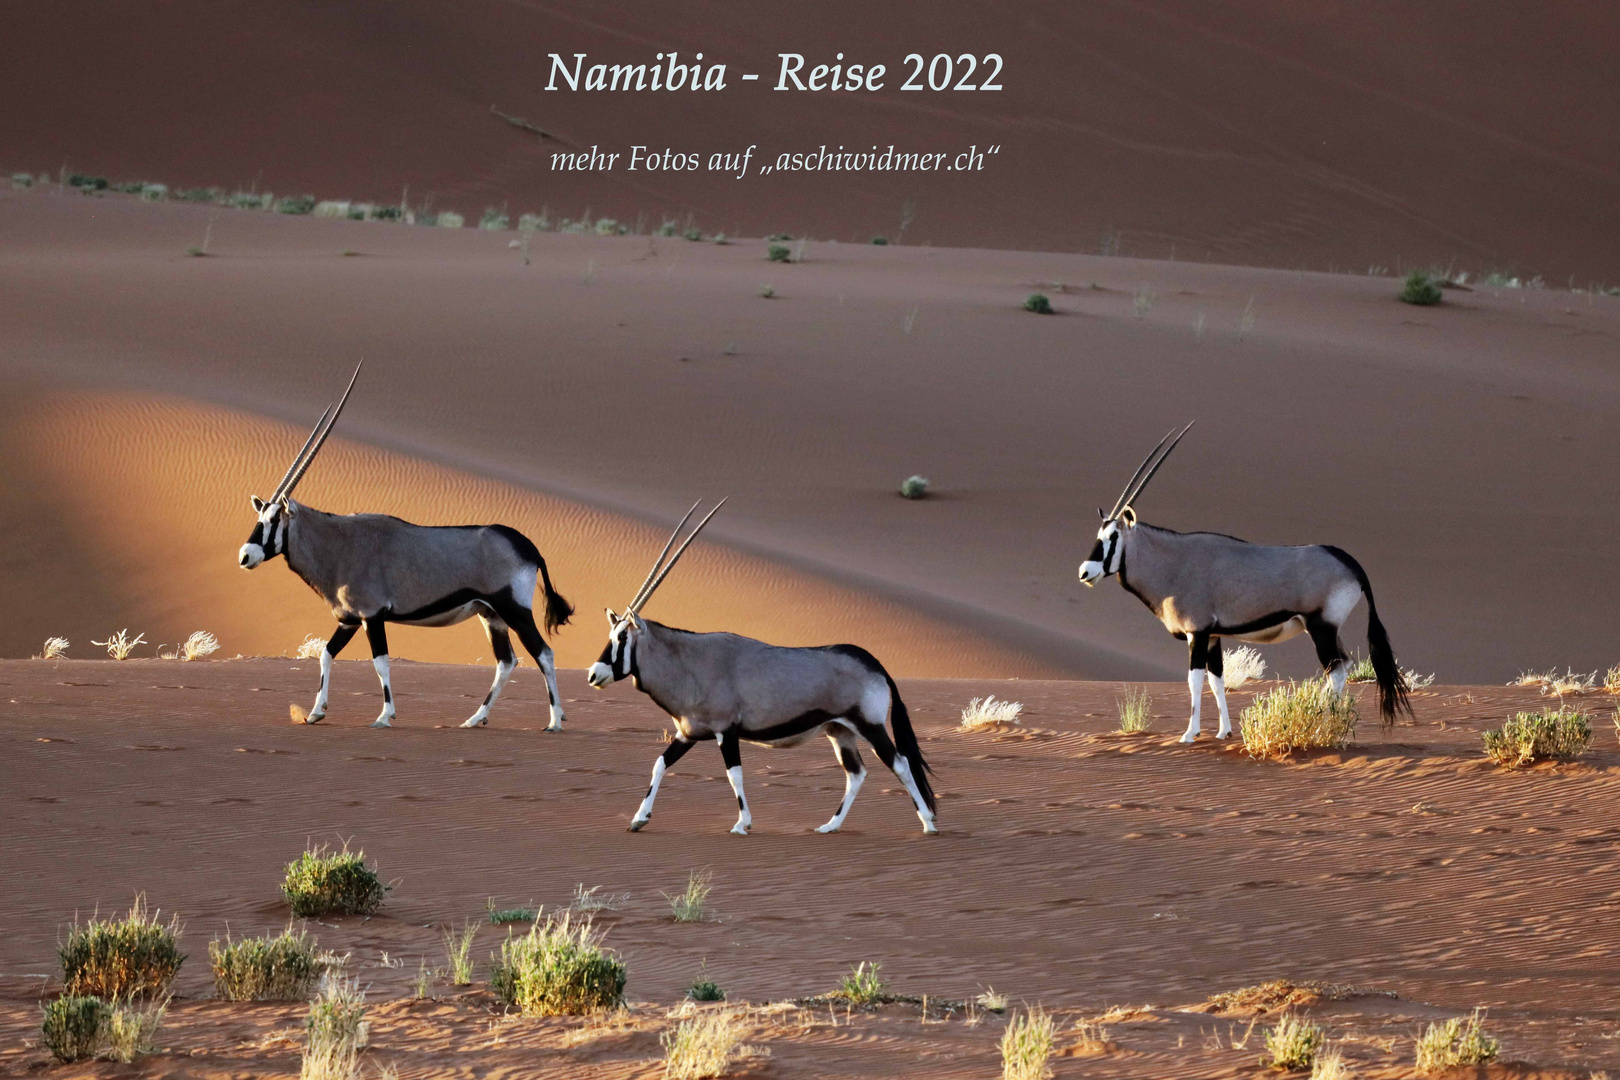 Namibia - Reise Mai - Juni 2022